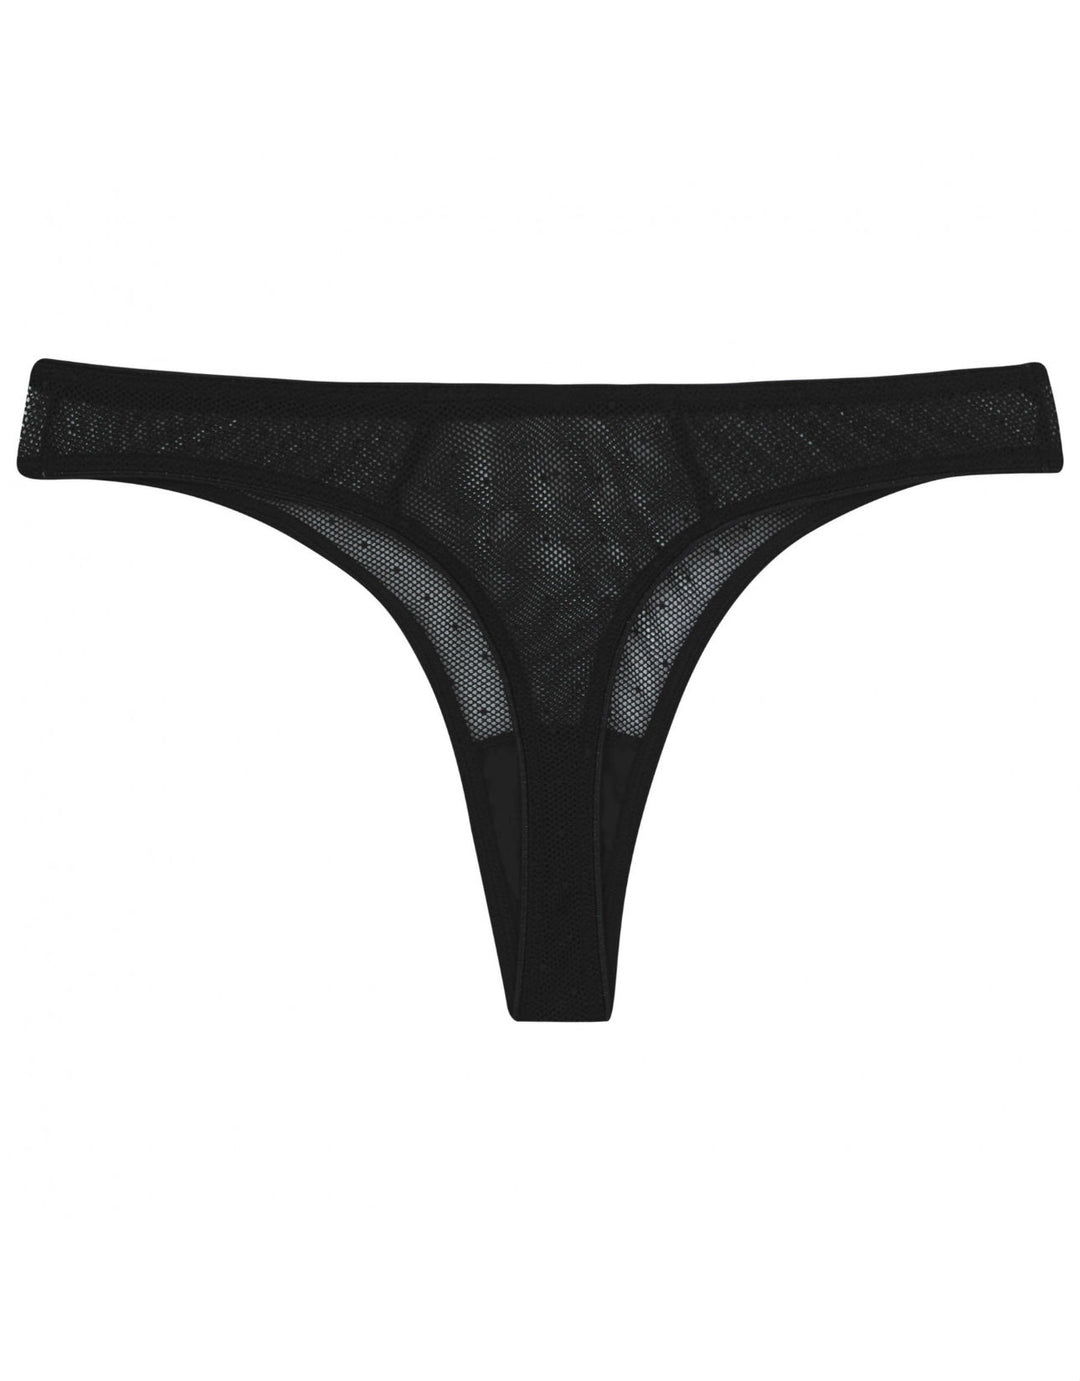 Thong Panty - BLACK - FINAL SALE